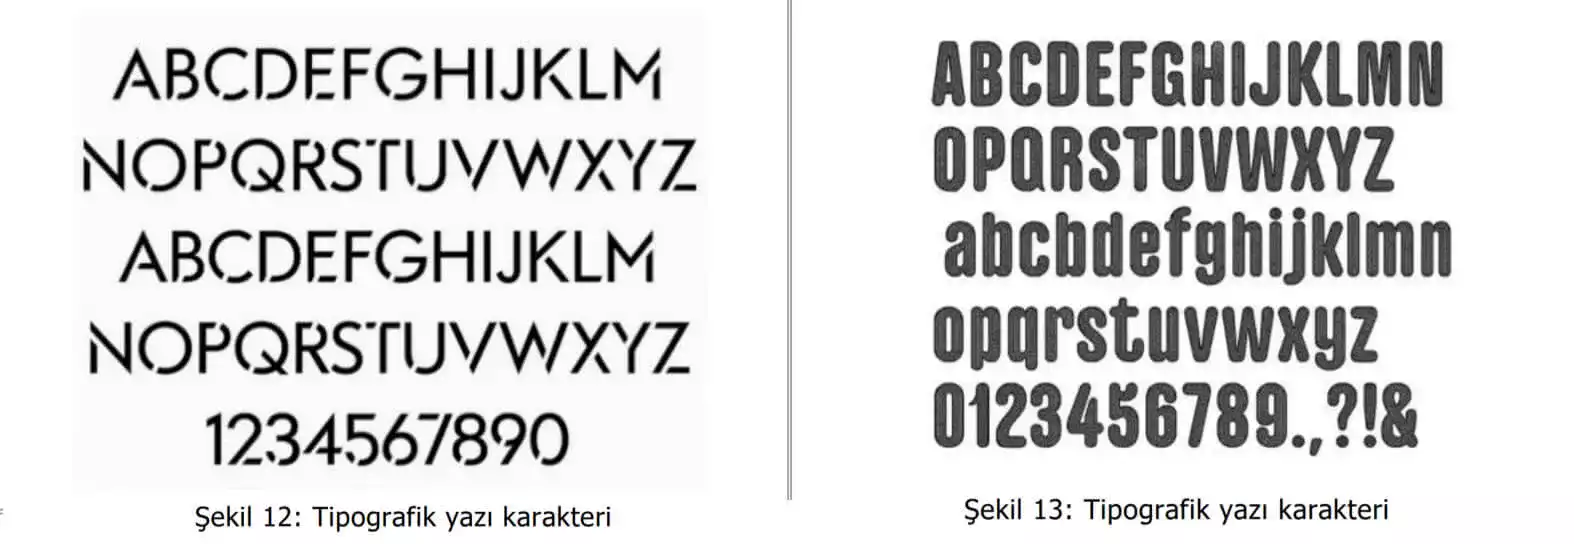 tipografik yazı karakter örnekleri-Adana Web Tasarım